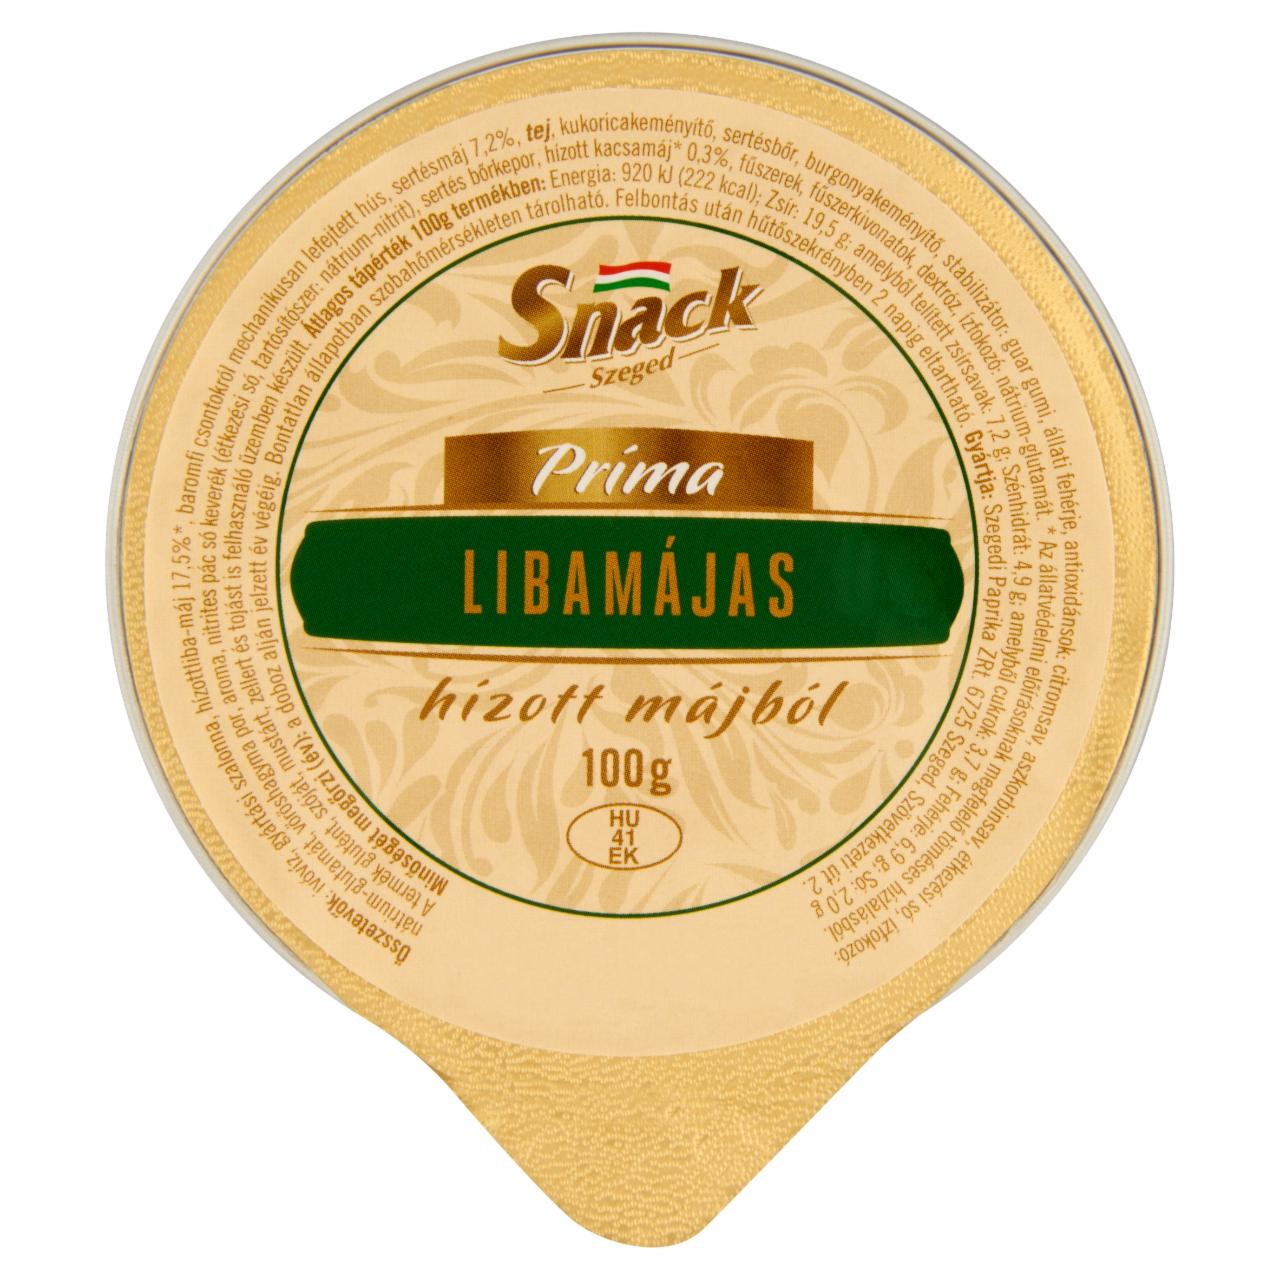 Képek - Snack Szeged Príma libamájas hízott májból 100 g